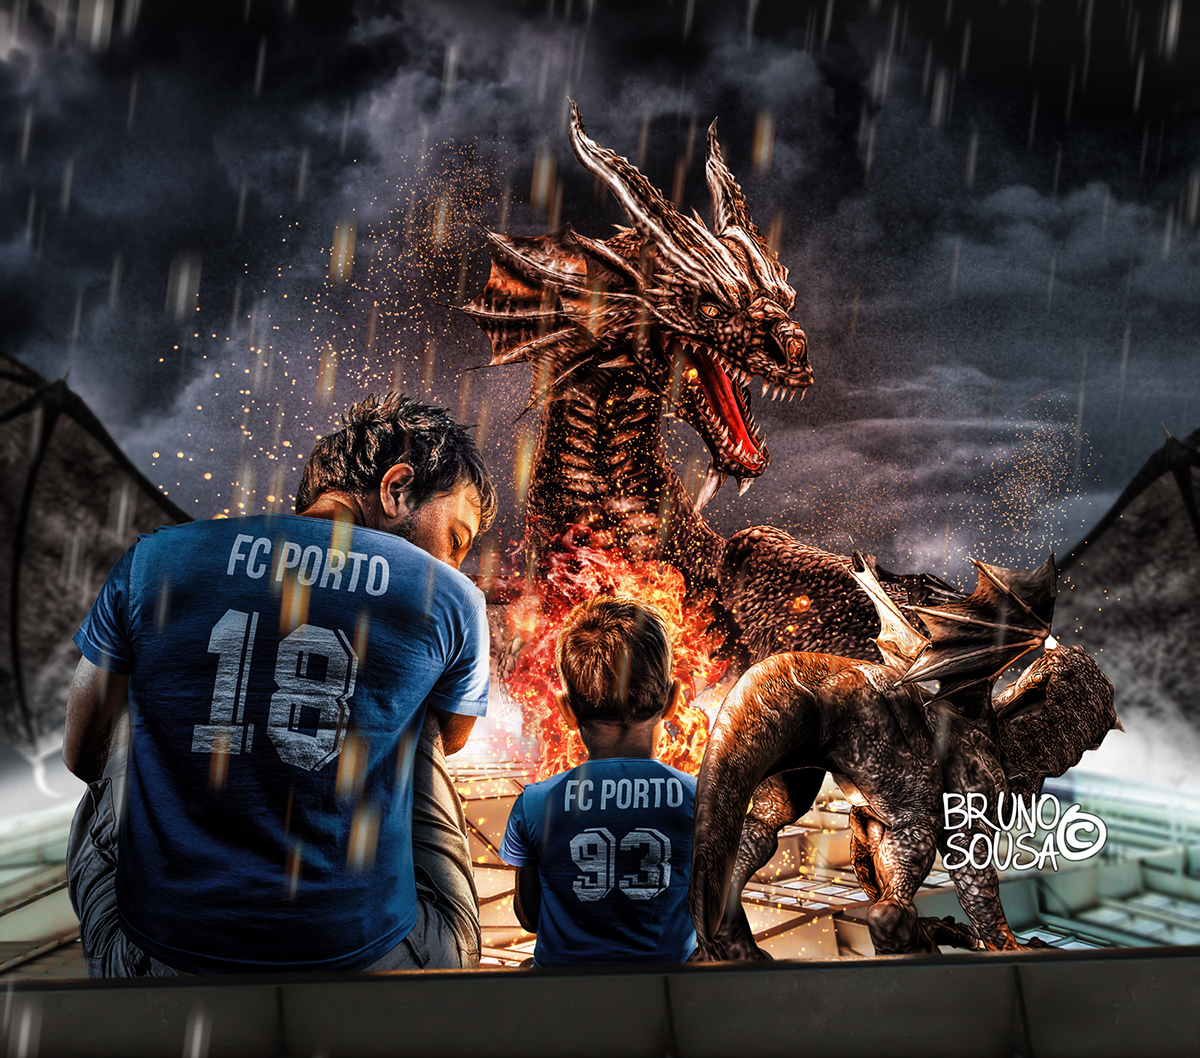 fcporto porto gates estadio stadium dragon football brunosousa photoshop